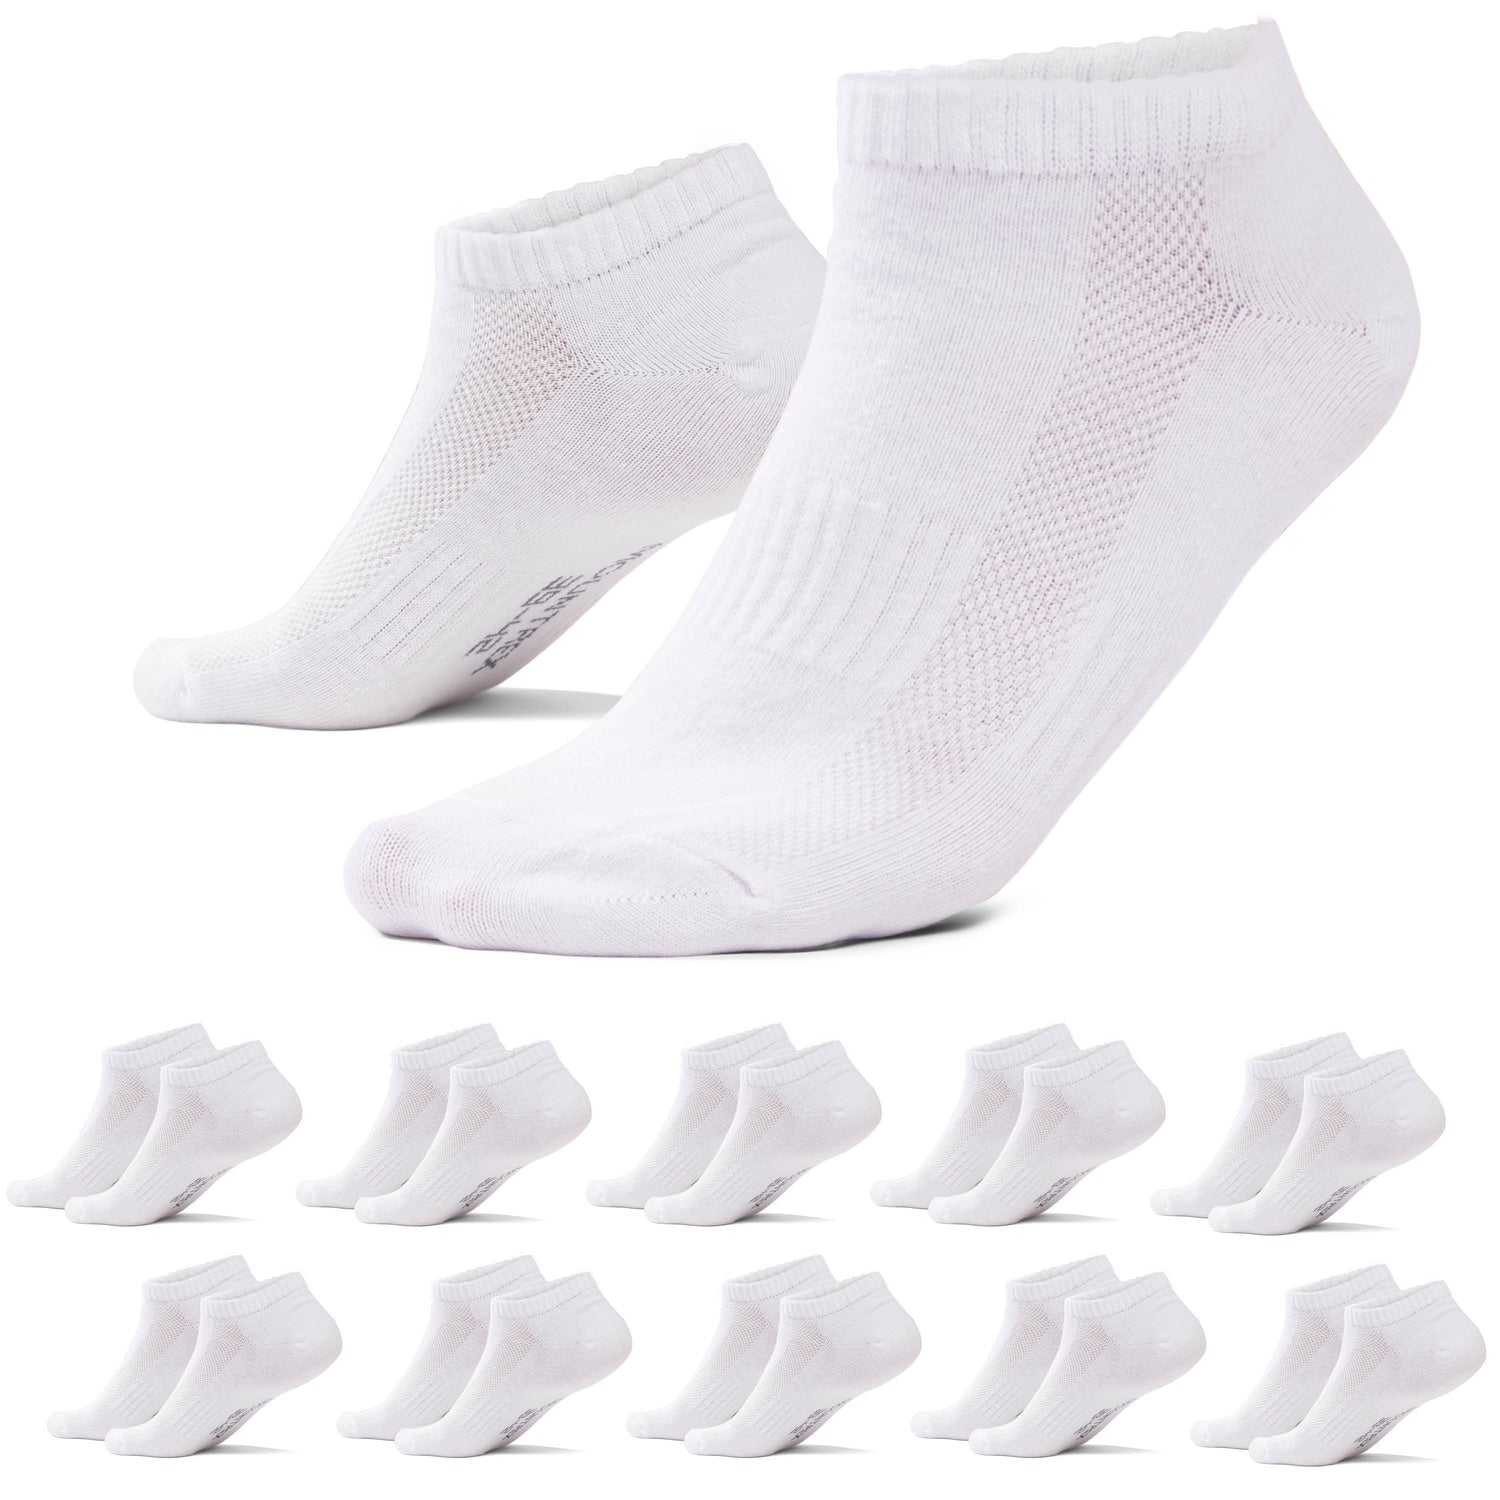 Sneaker Socken Weiß – Herren - Paar) & (10 Damen mountrex-socken